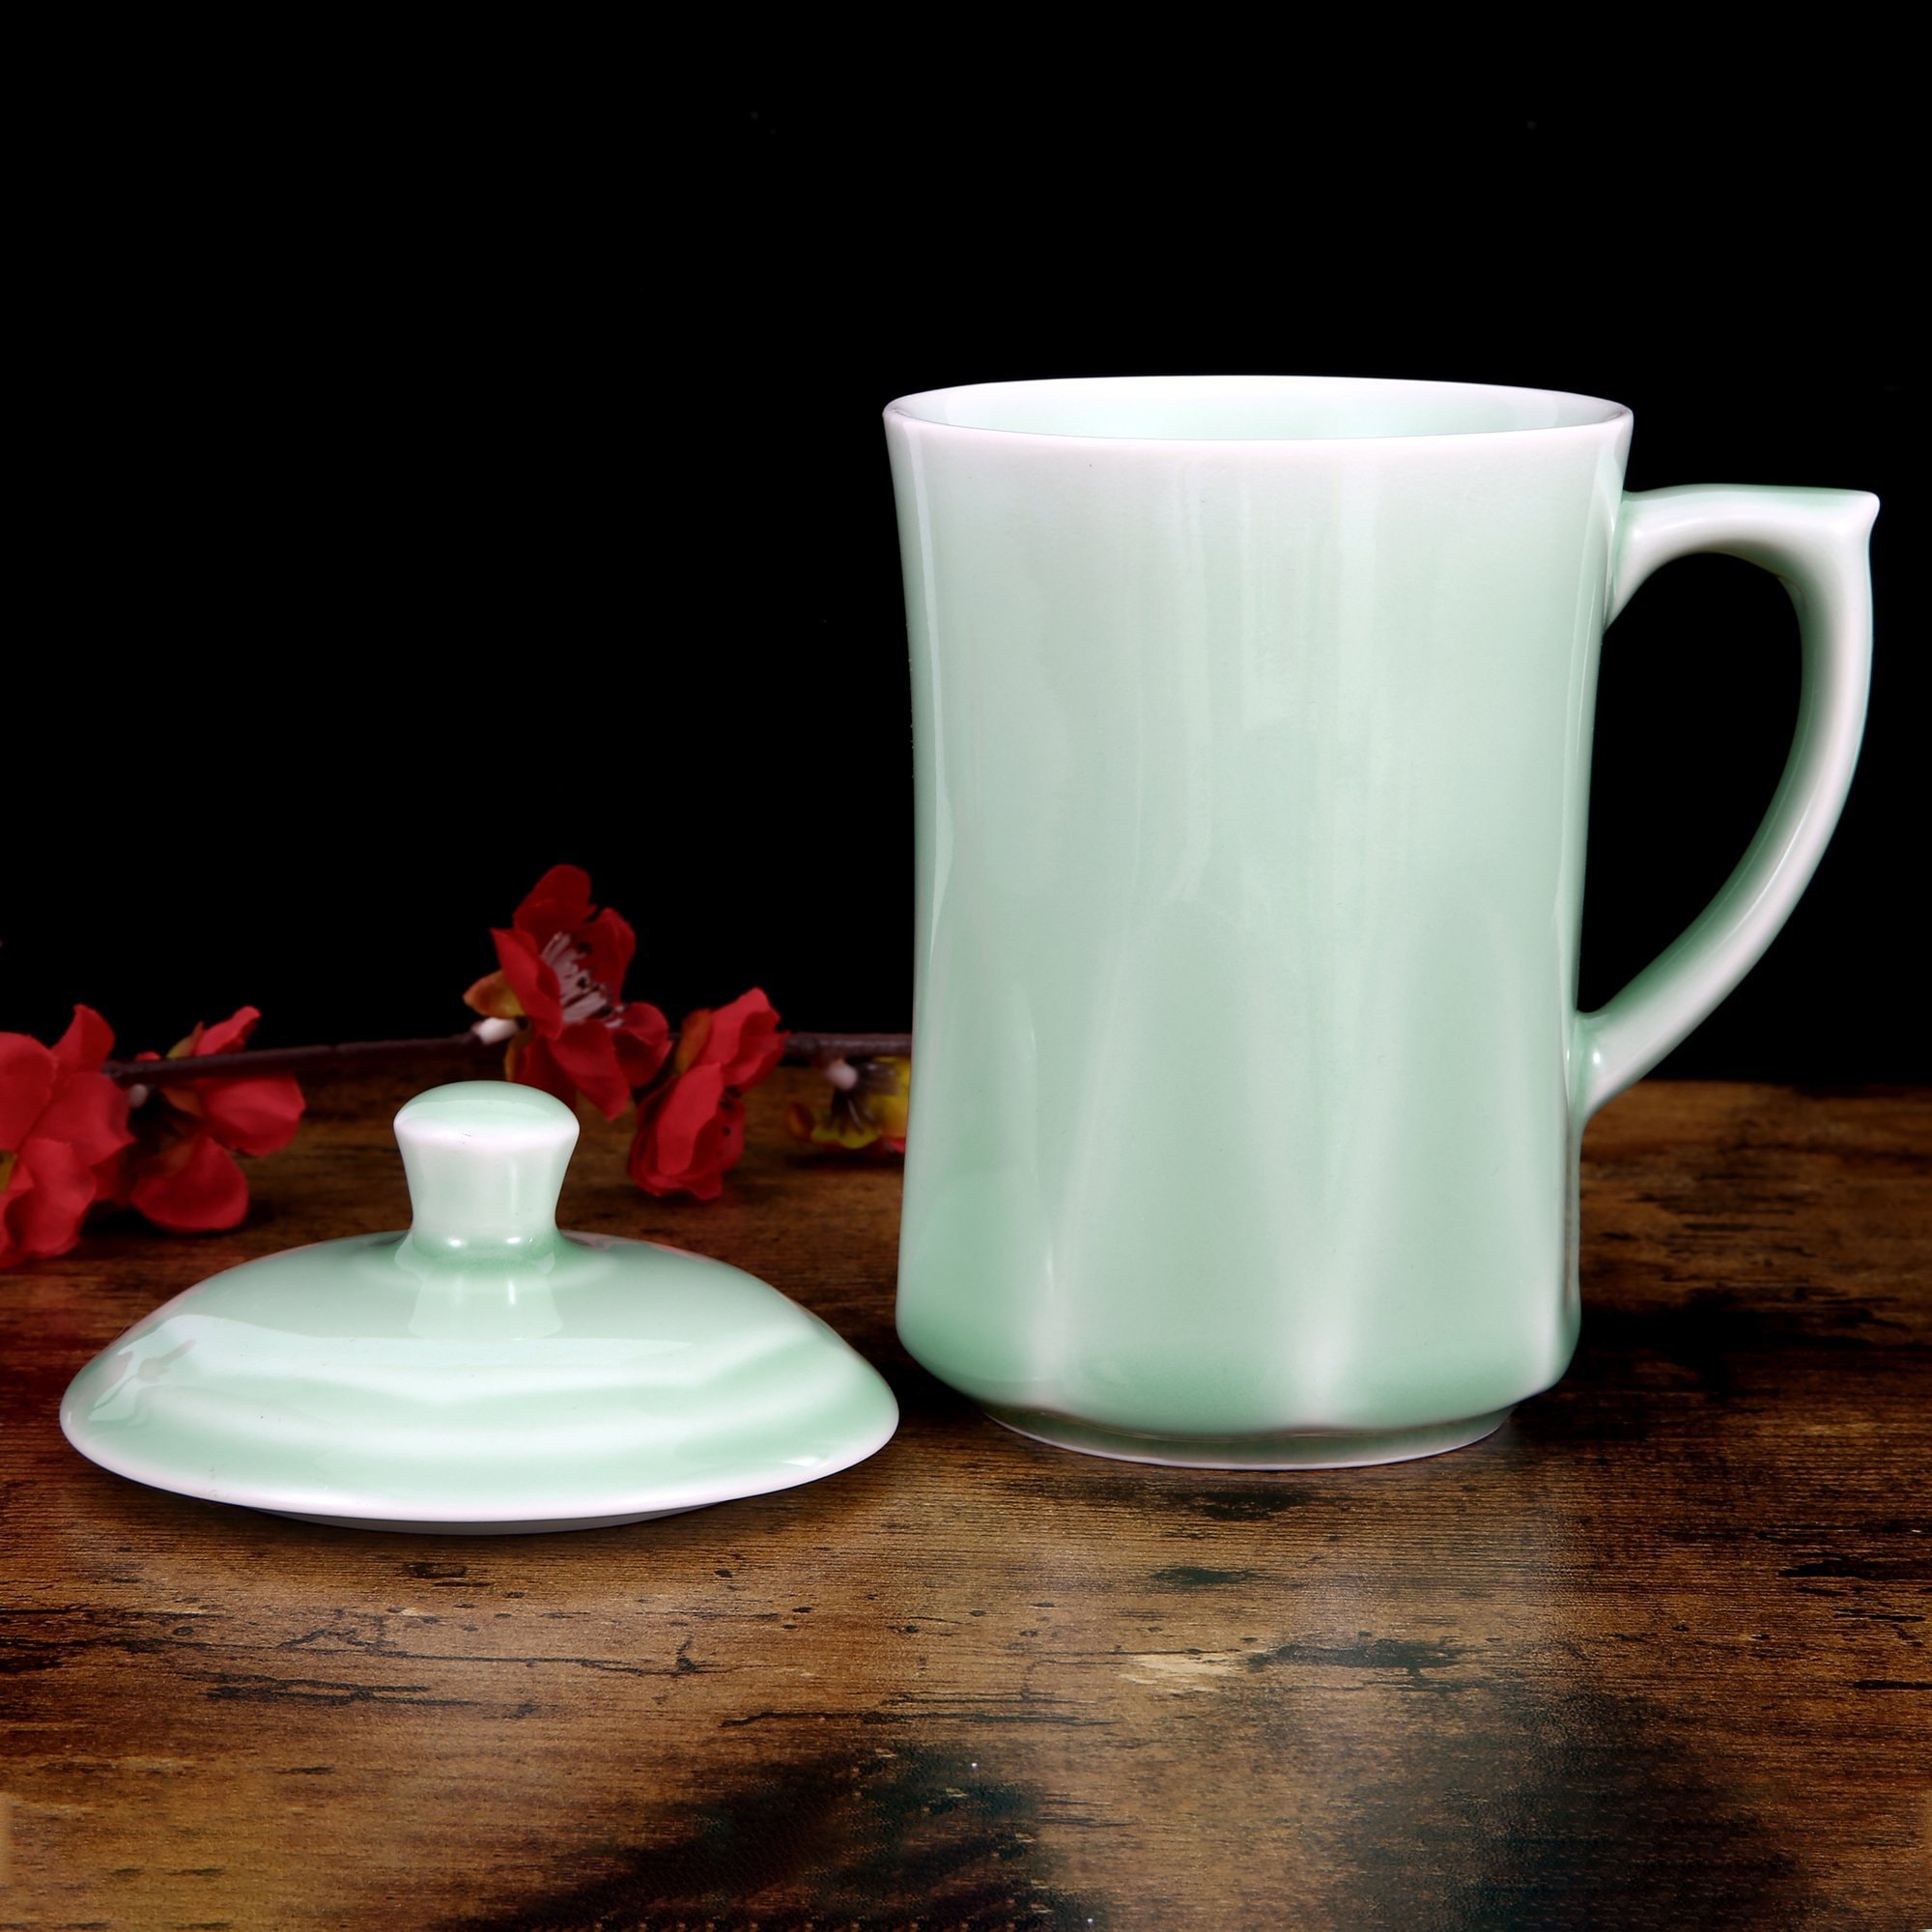 青花瓷茶杯 咖啡杯 牛奶杯 GREEN VALLEY青瓷带盖菱杯子礼盒 中国龙泉青瓷 世界非物质文化遗产 13盎司水杯 梅子青